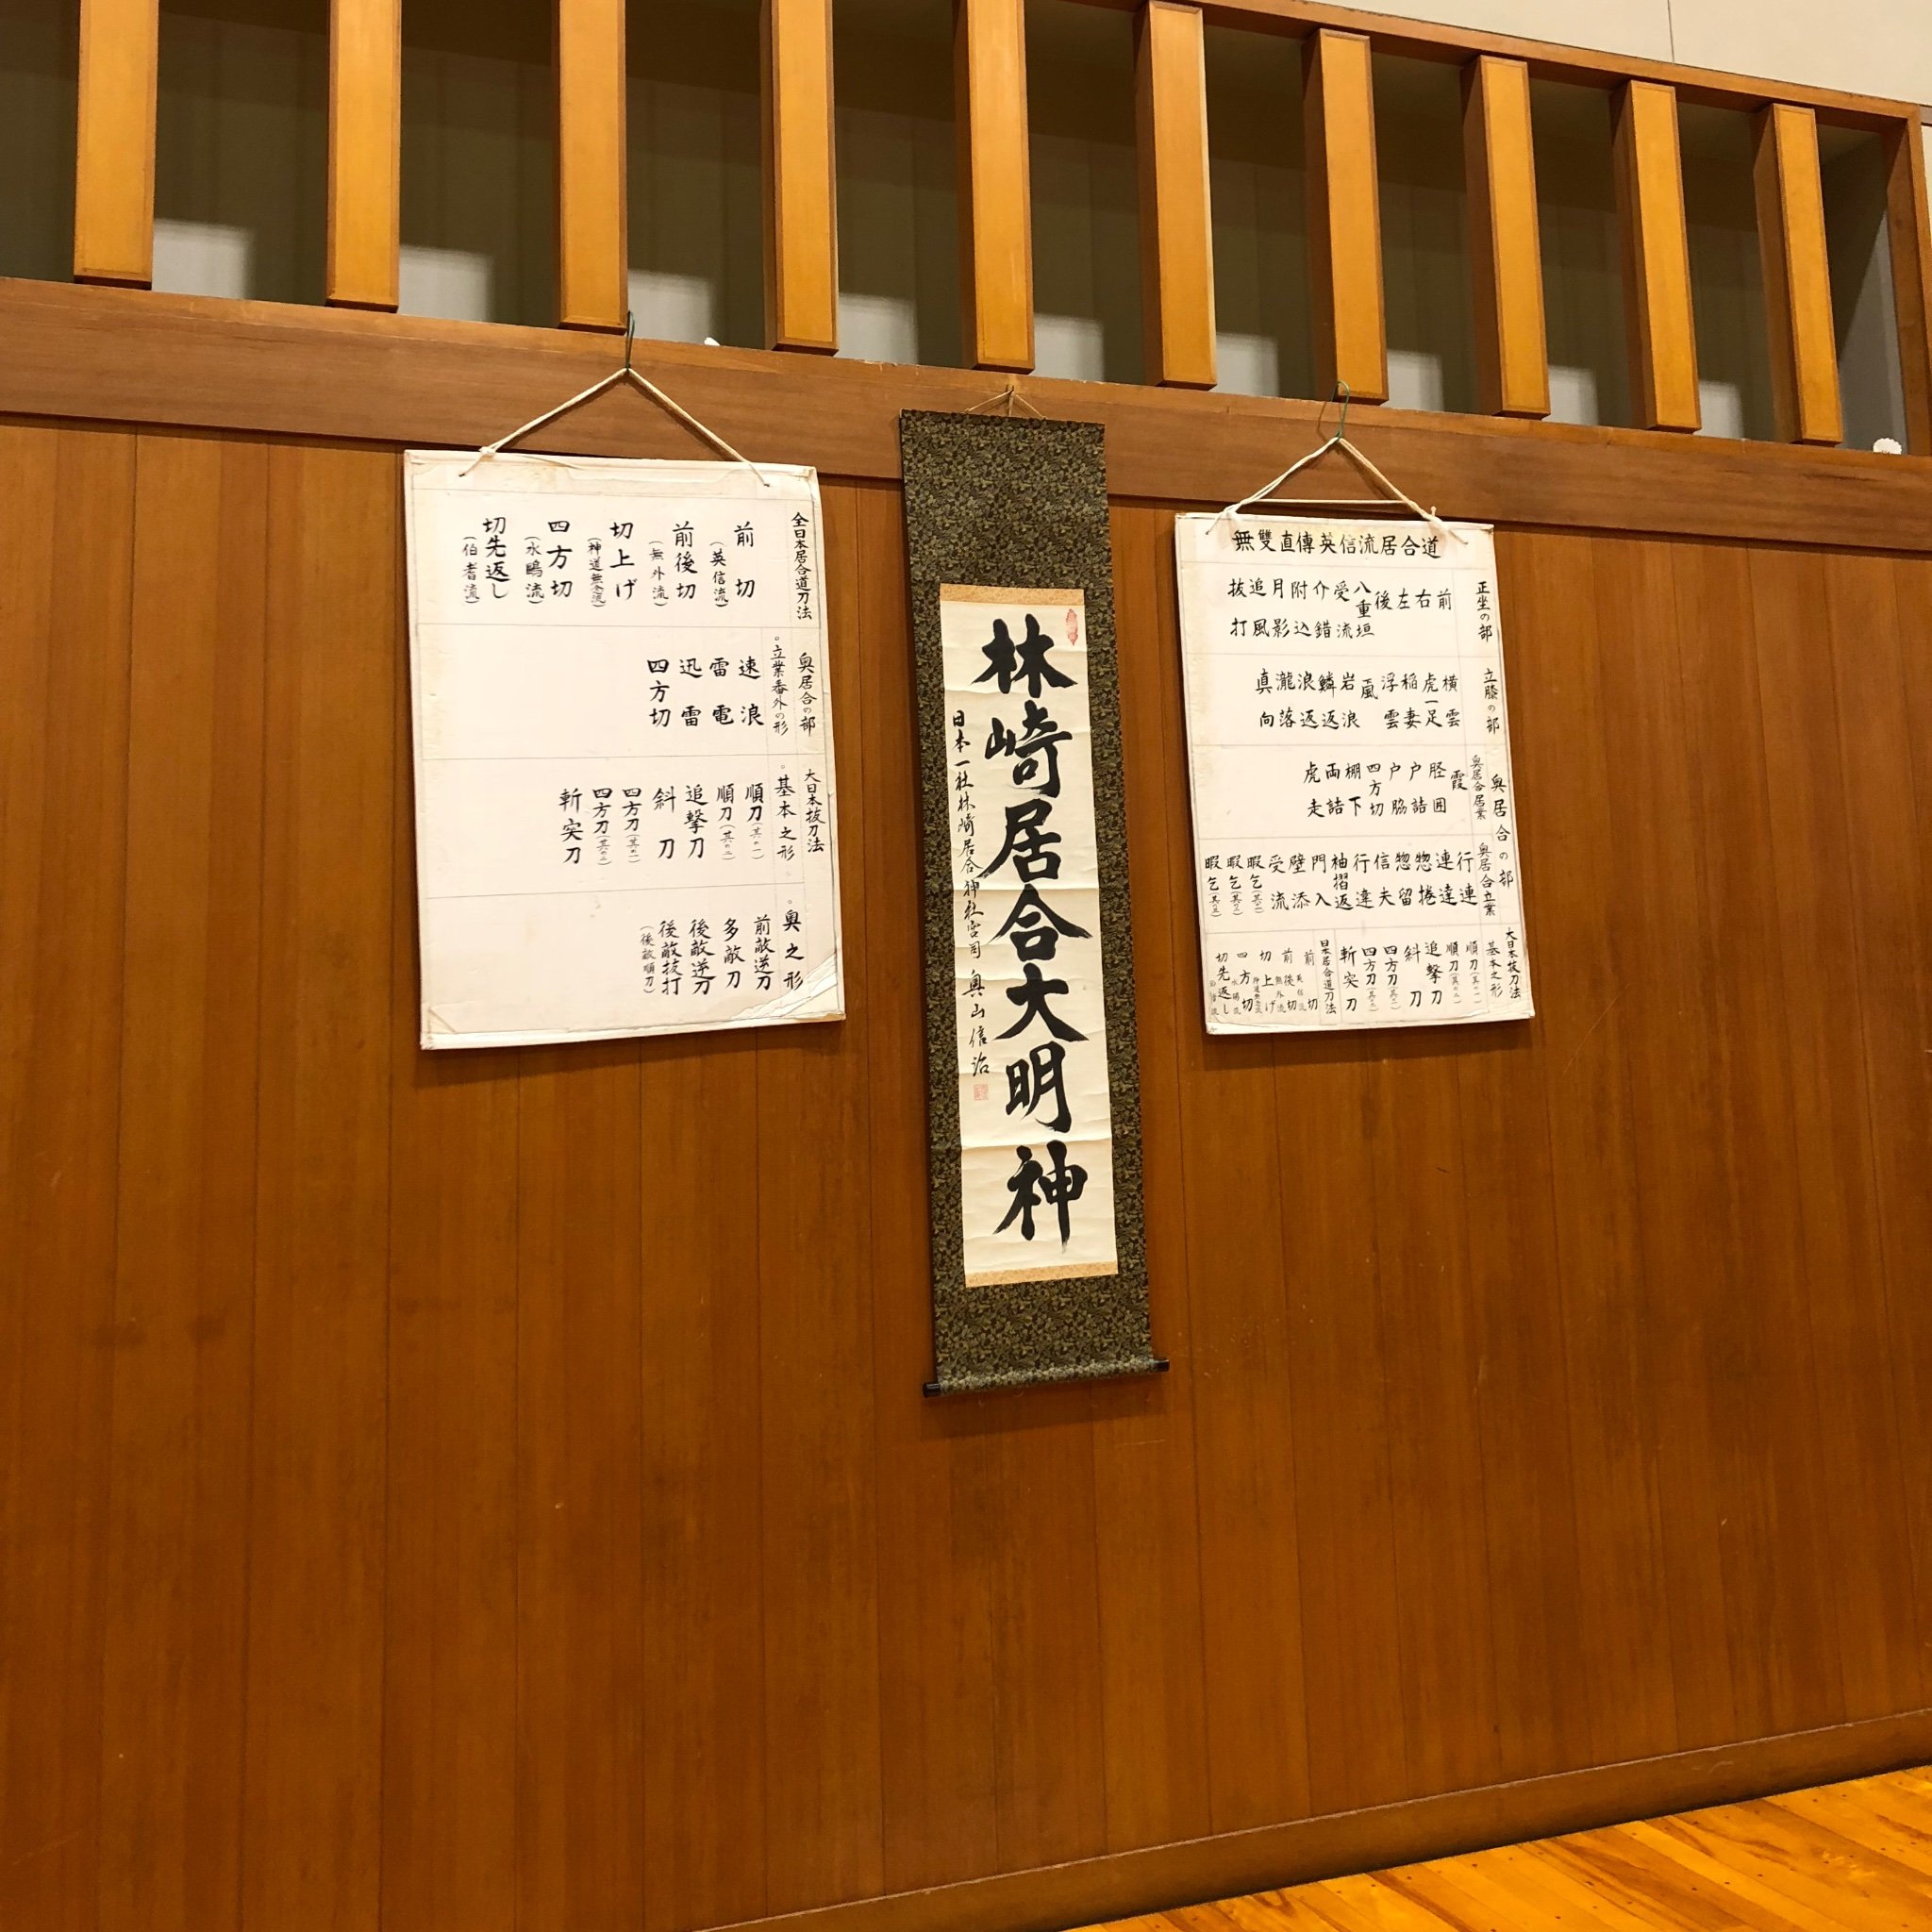 鎌倉居合道協会は全日本居合道連盟の傘下で無双直伝英信流の居合道を学ぶ団体です。鎌倉市体育協会に所属しており、鎌倉武道館で稽古しています。※基本的に当アカウントからのリプライは行いませんので、ご了承ください。